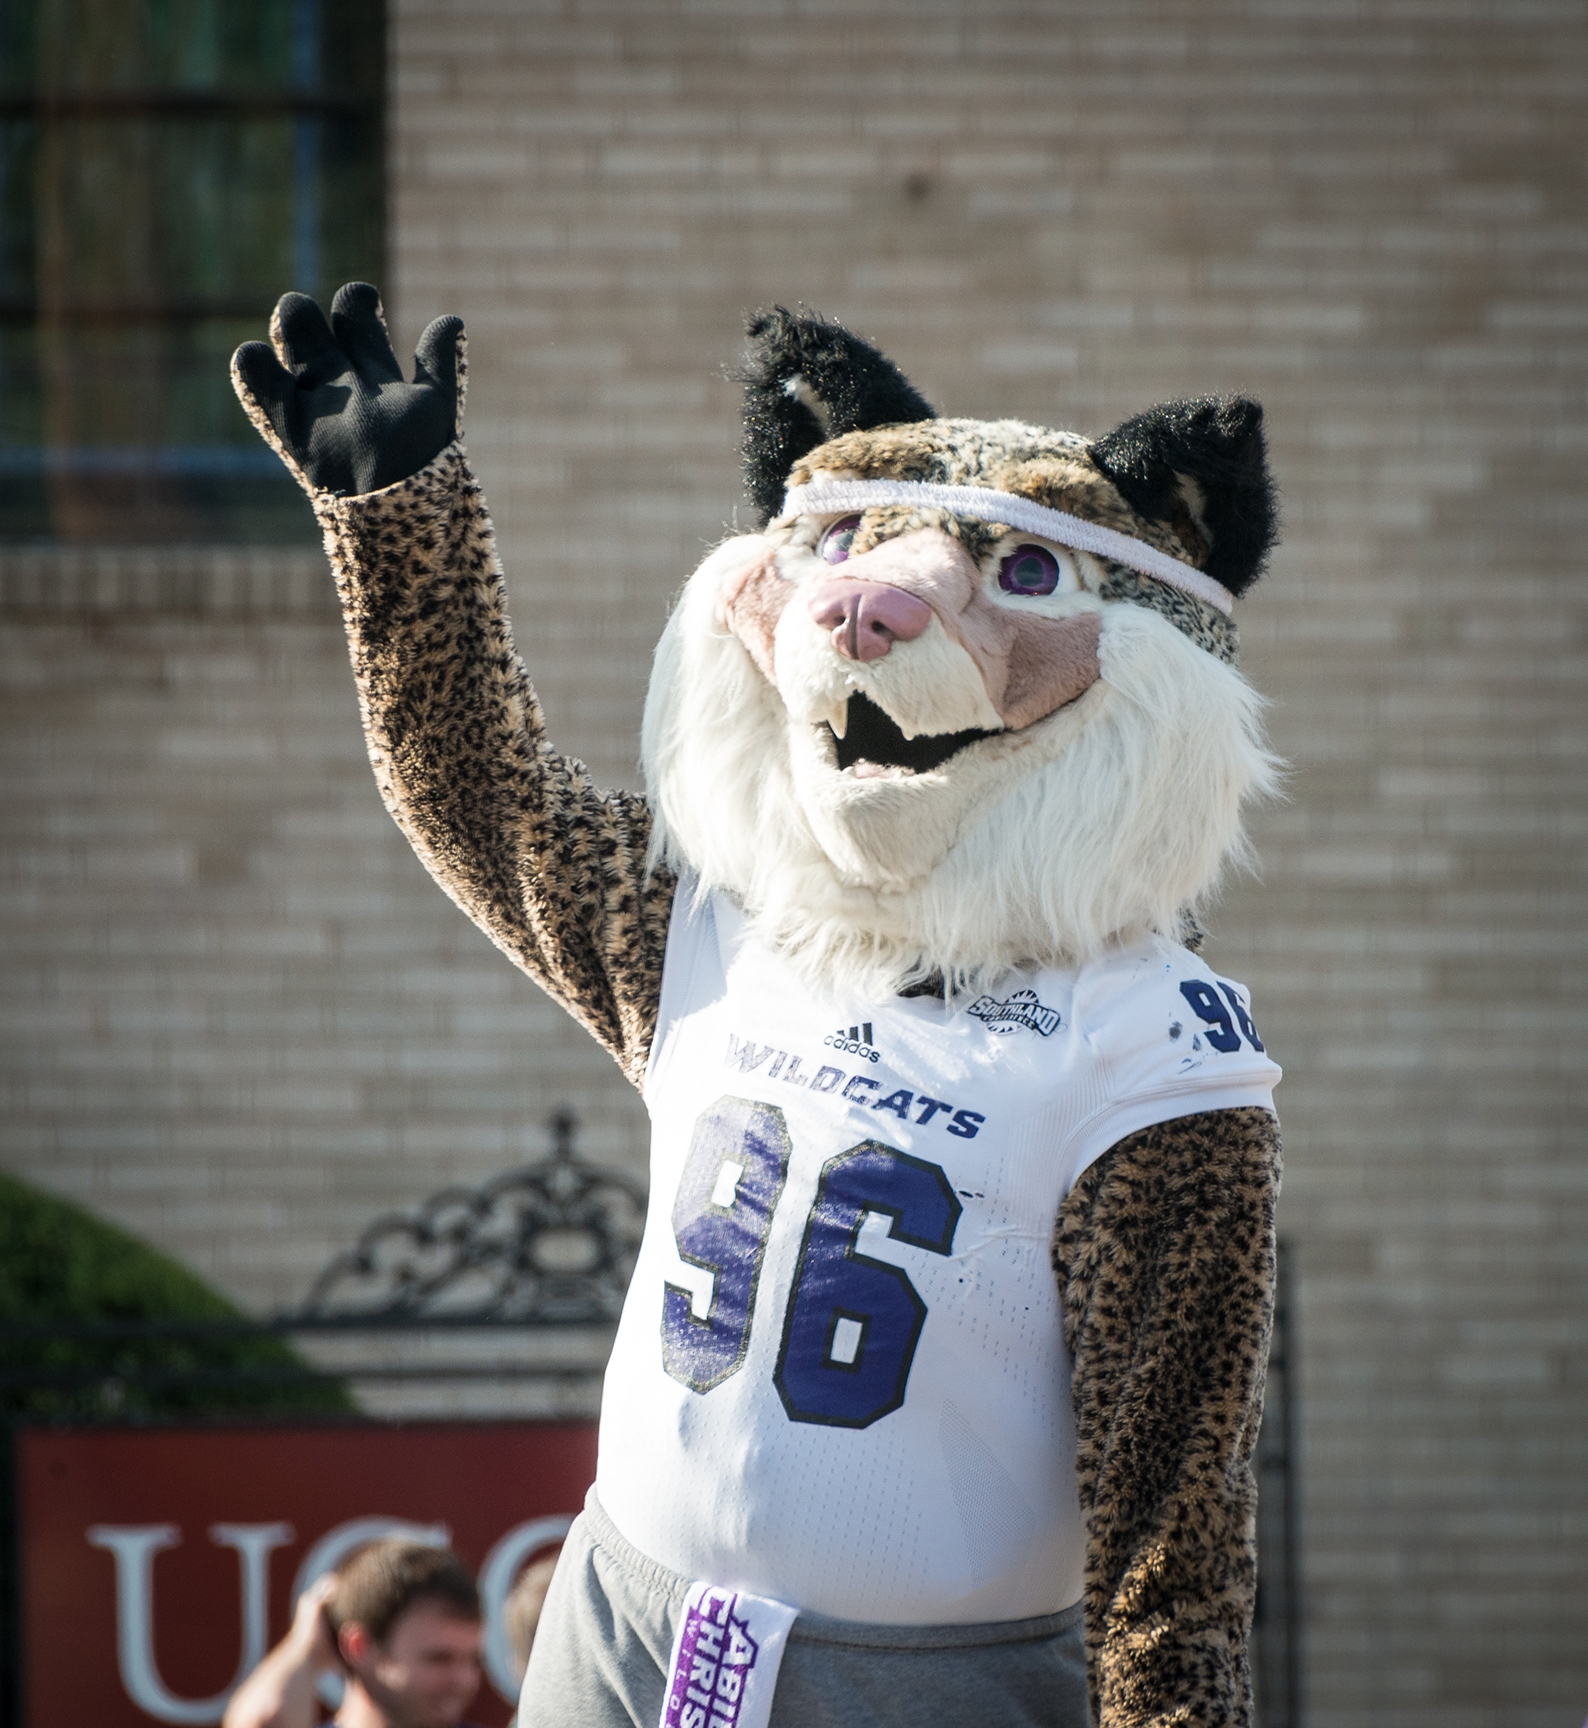 The Wildcat mascot waving hand